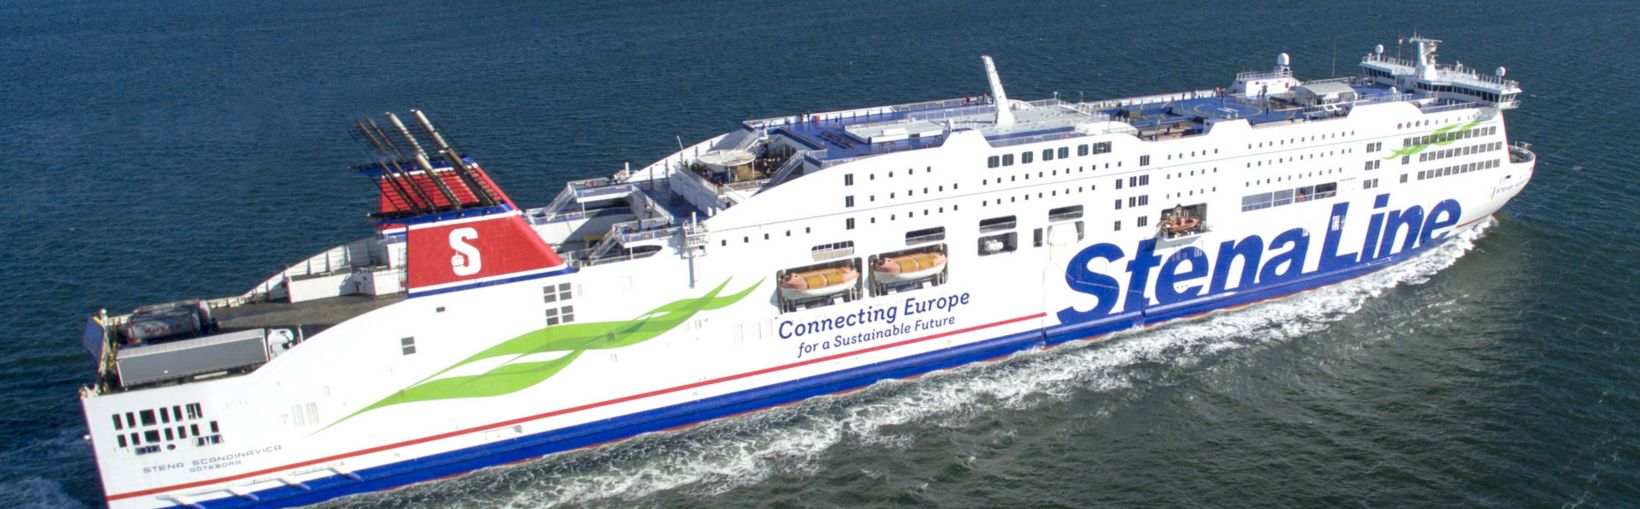 Stena Scandinavica ferry en el mar